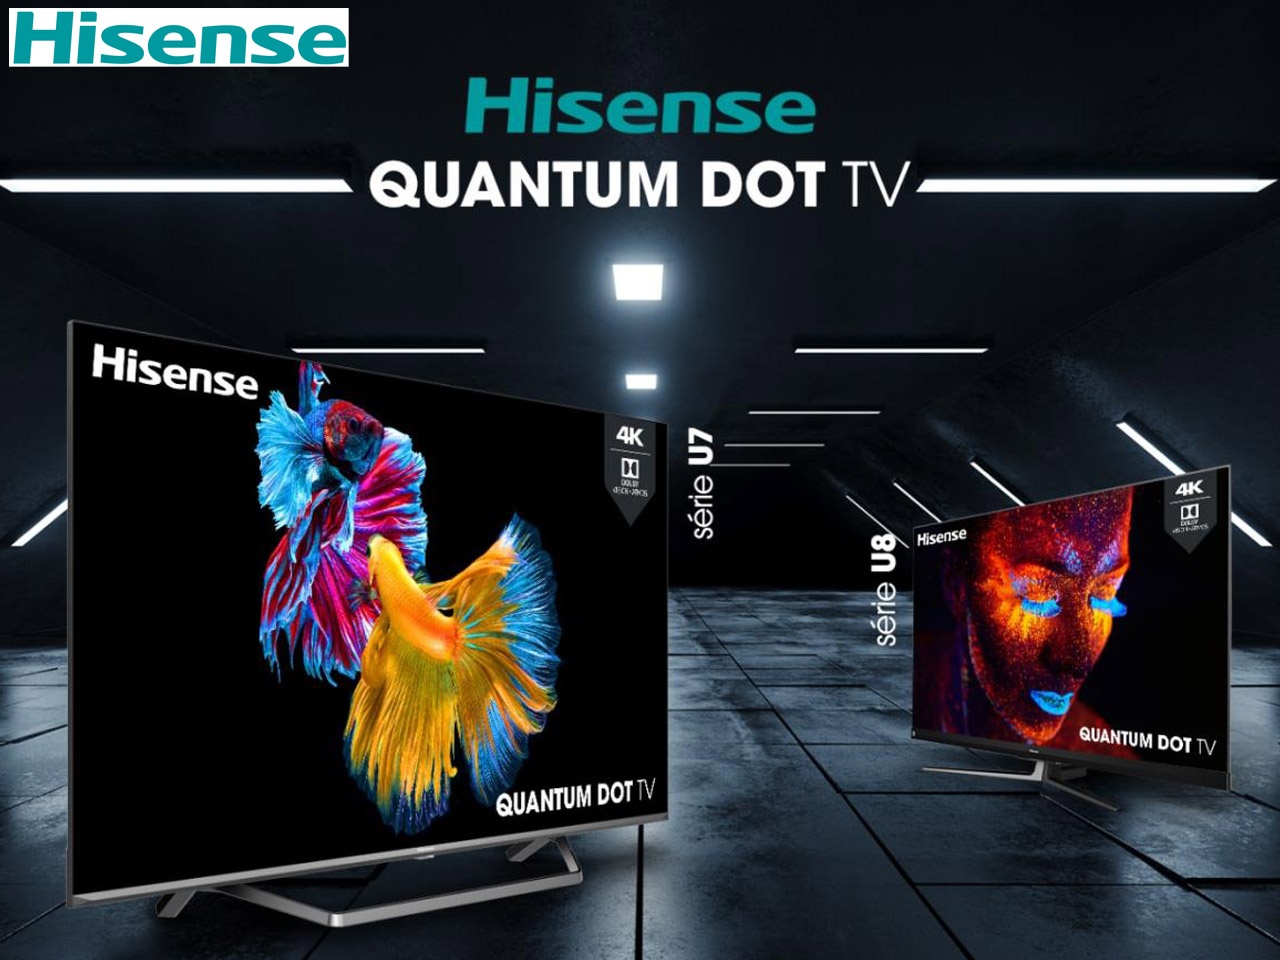 Hisense présente sa nouvelle gamme de téléviseurs QLED, composée de deux séries stratégiques